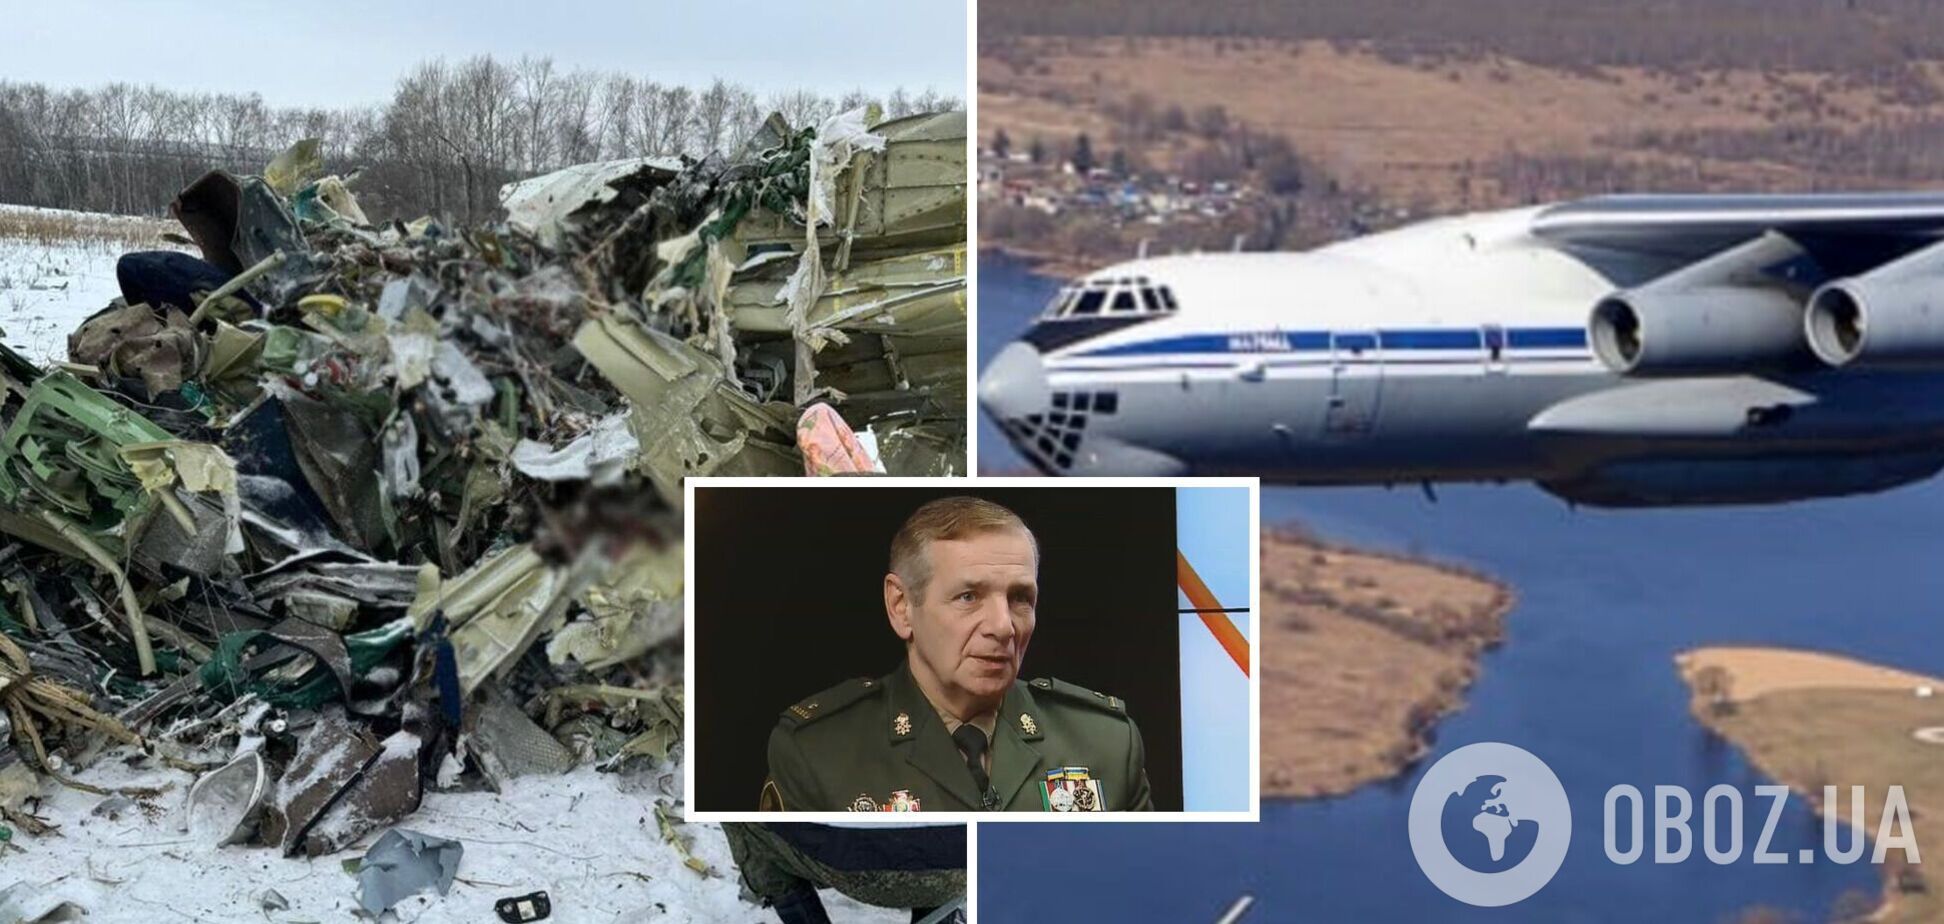 Есть четыре вопроса по катастрофе Ил-76, логична только одна версия: интервью с майором Гетьманом